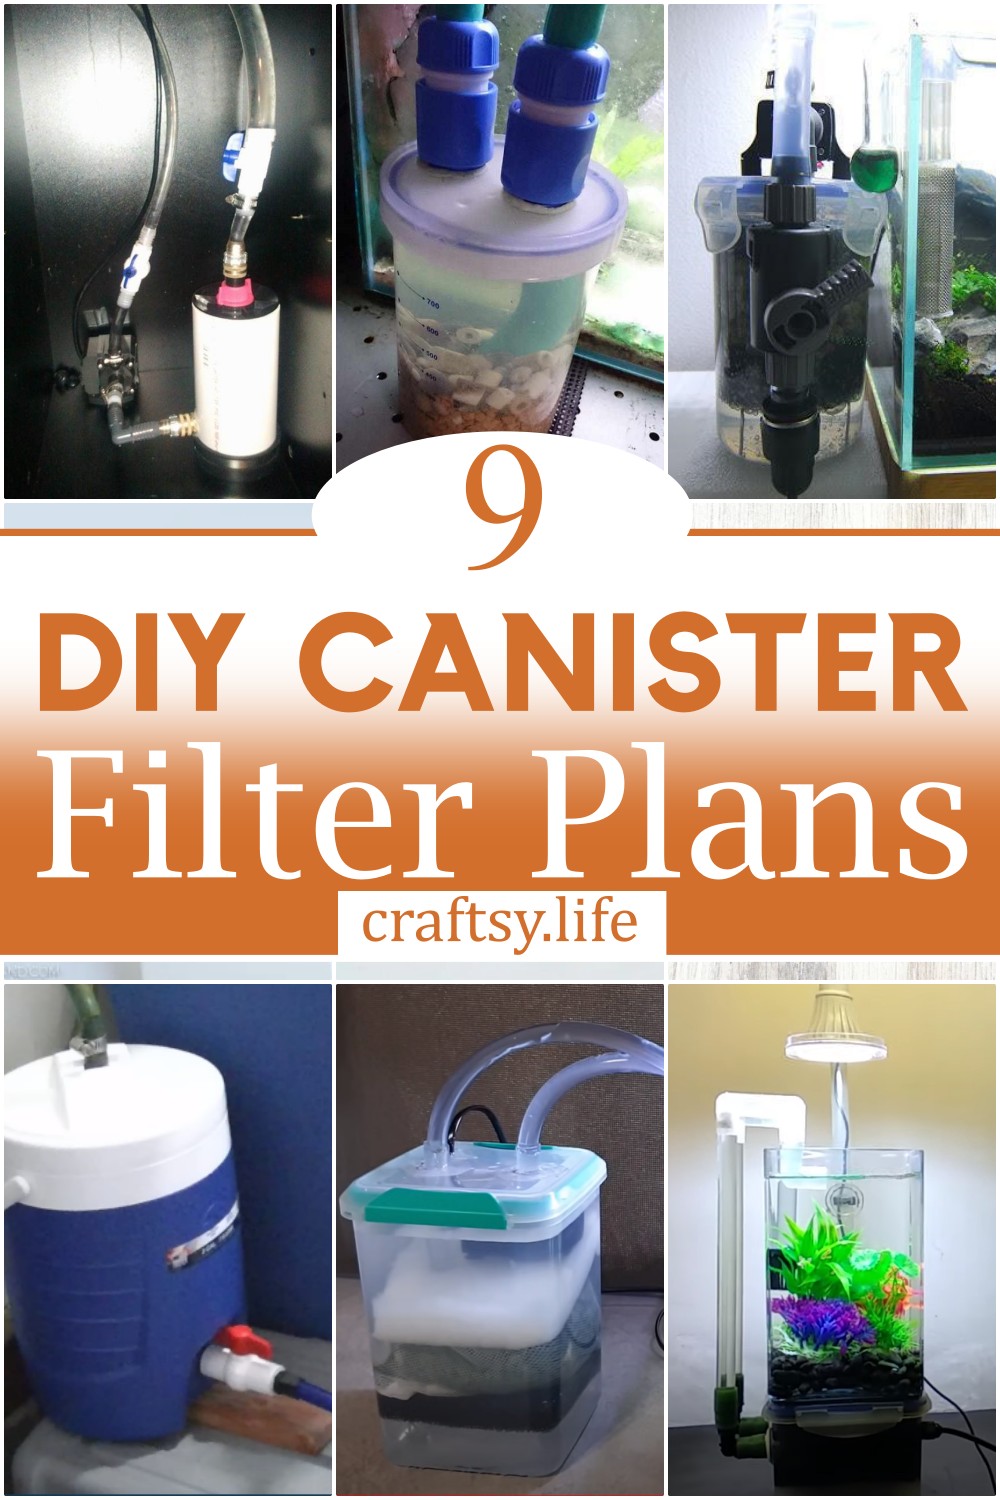 DIY Canister Filter Plans